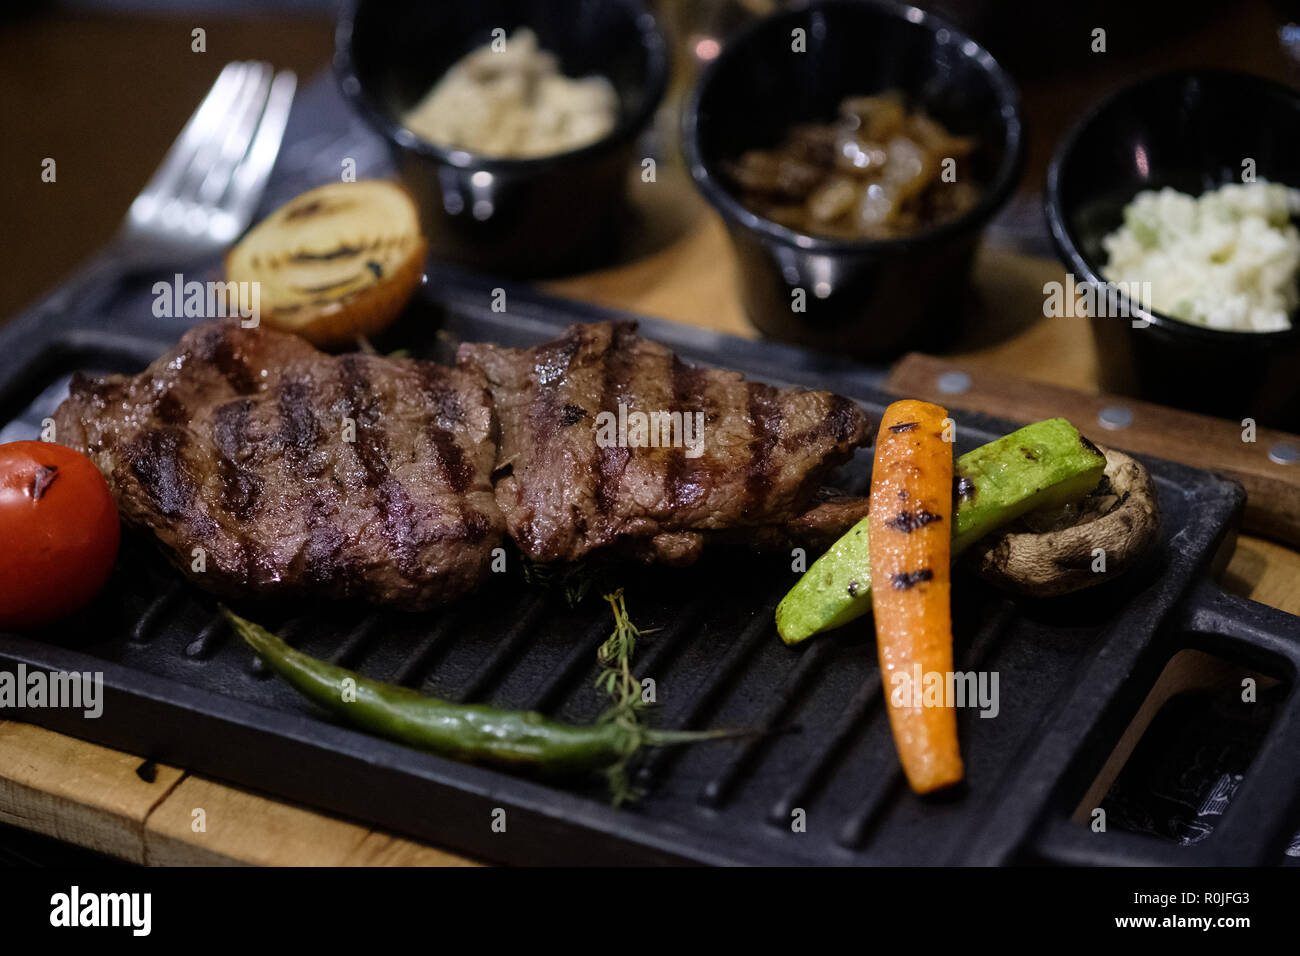 Gegrilltes Fleisch und Gemüse Mahlzeit in einem Restaurant Tisch serviert werden Stockfoto